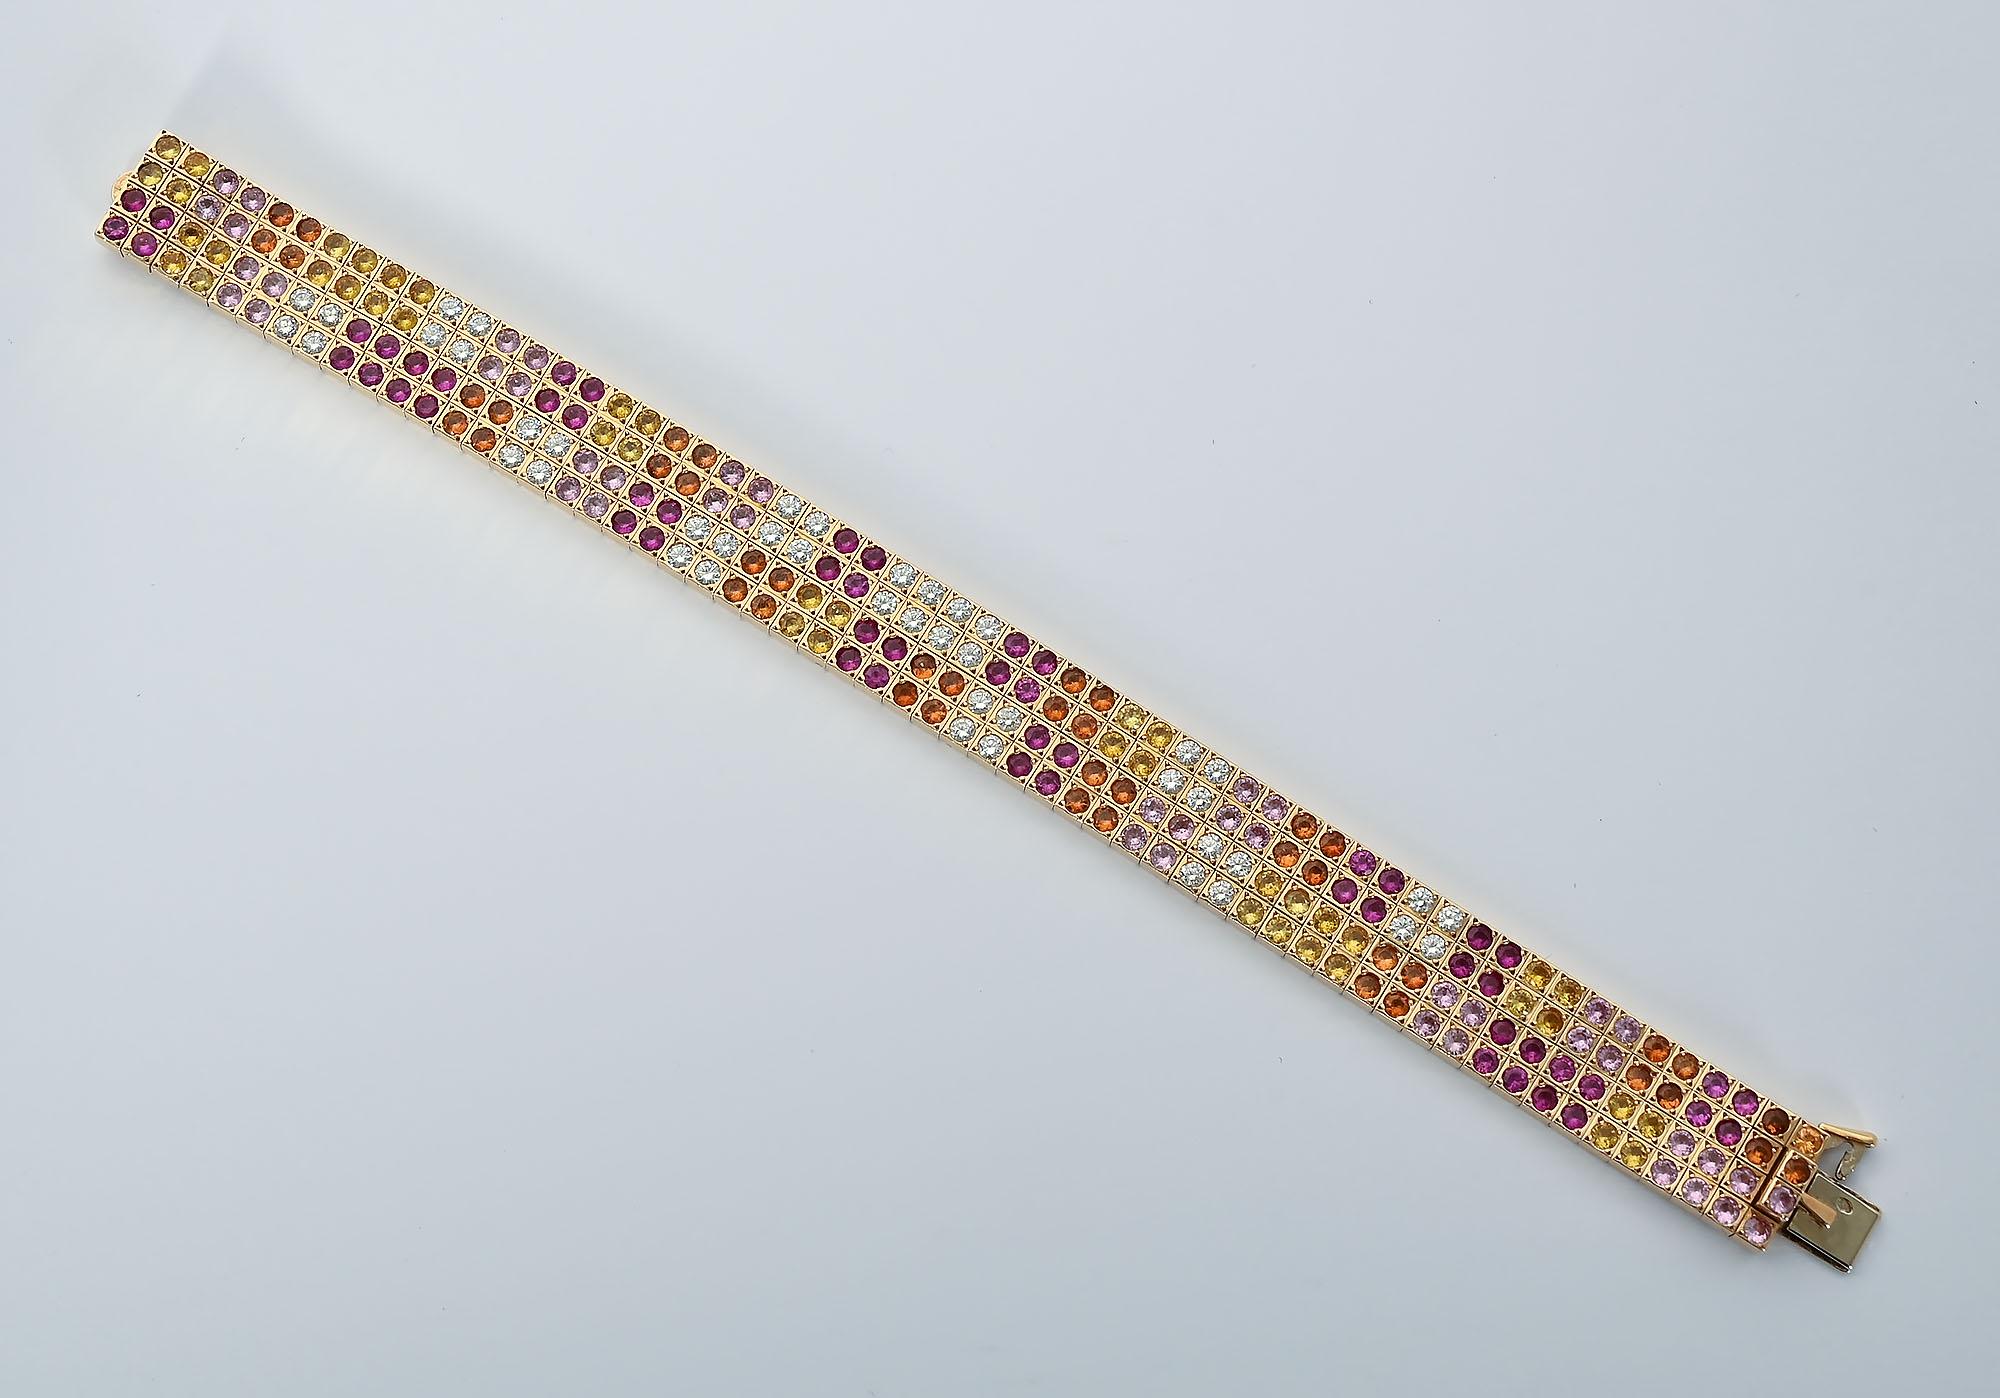 Exquisite Cartier Armband mit Diamanten und mehrere Farben von Saphiren. Er hat 44 Diamanten mit einem Gesamtgewicht von 3,08 Karat. Saphire in den Farben Gelb, Ringelblume und Rose wiegen insgesamt 20 Karat. Das Armband wird in Frankreich